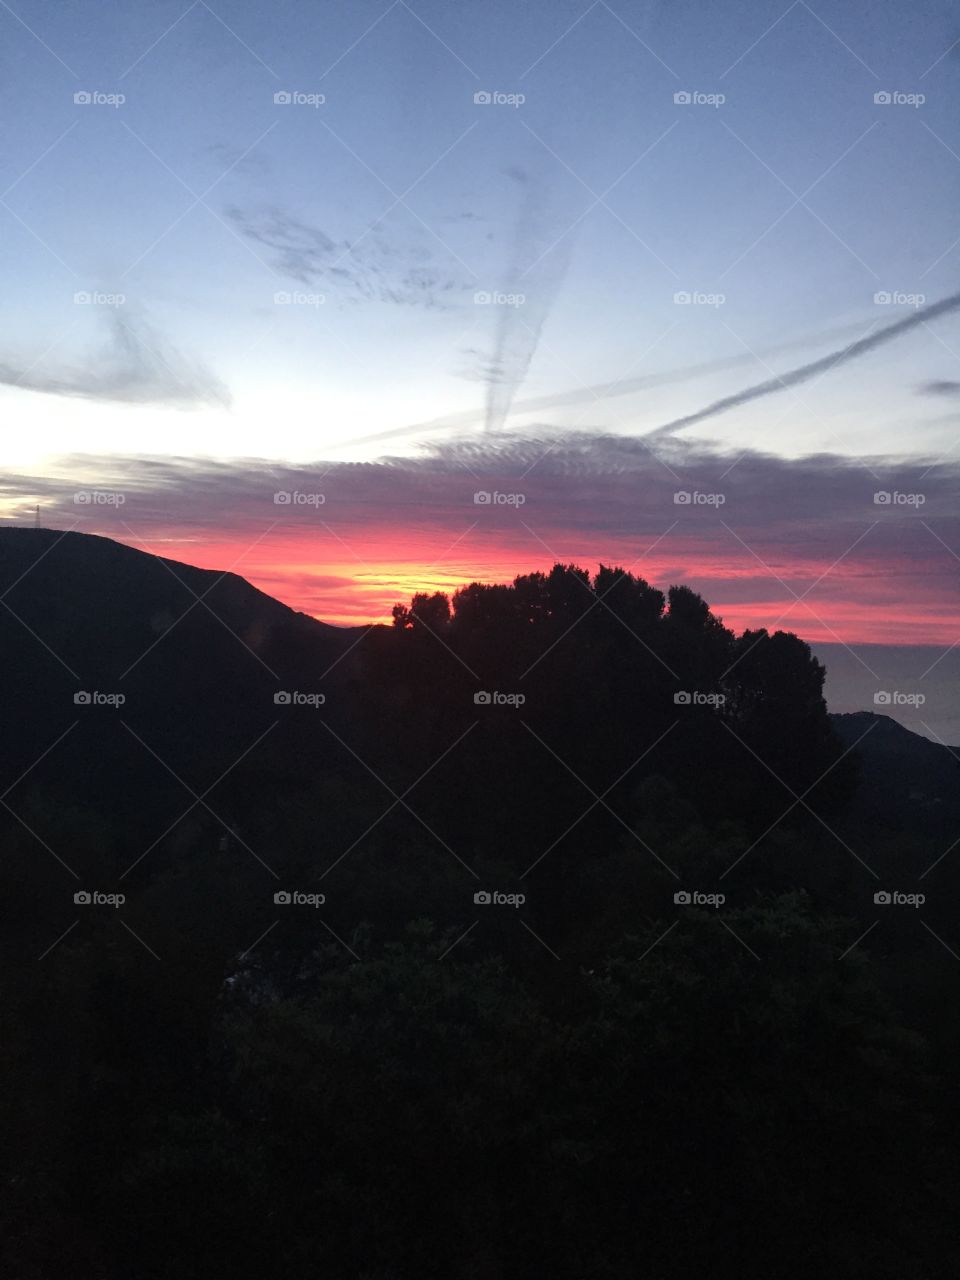 Landscape, Mountain, Sky, Sunset, Volcano